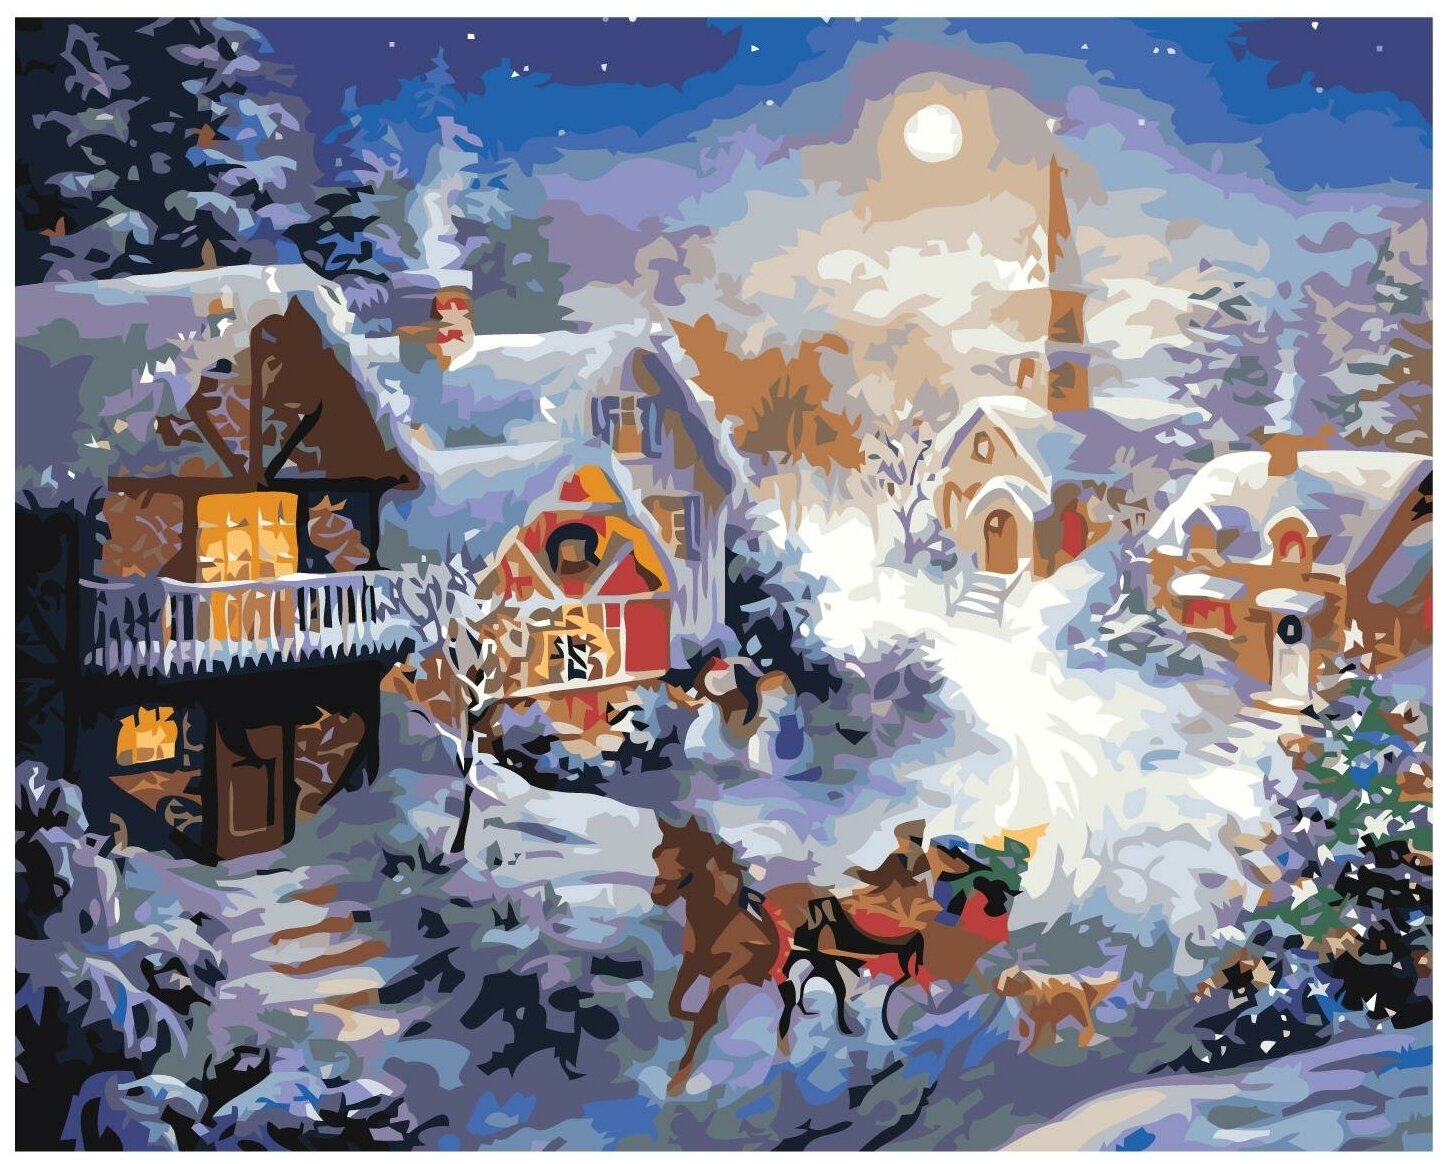 Рождественский вечер Раскраска картина по номерам на холсте